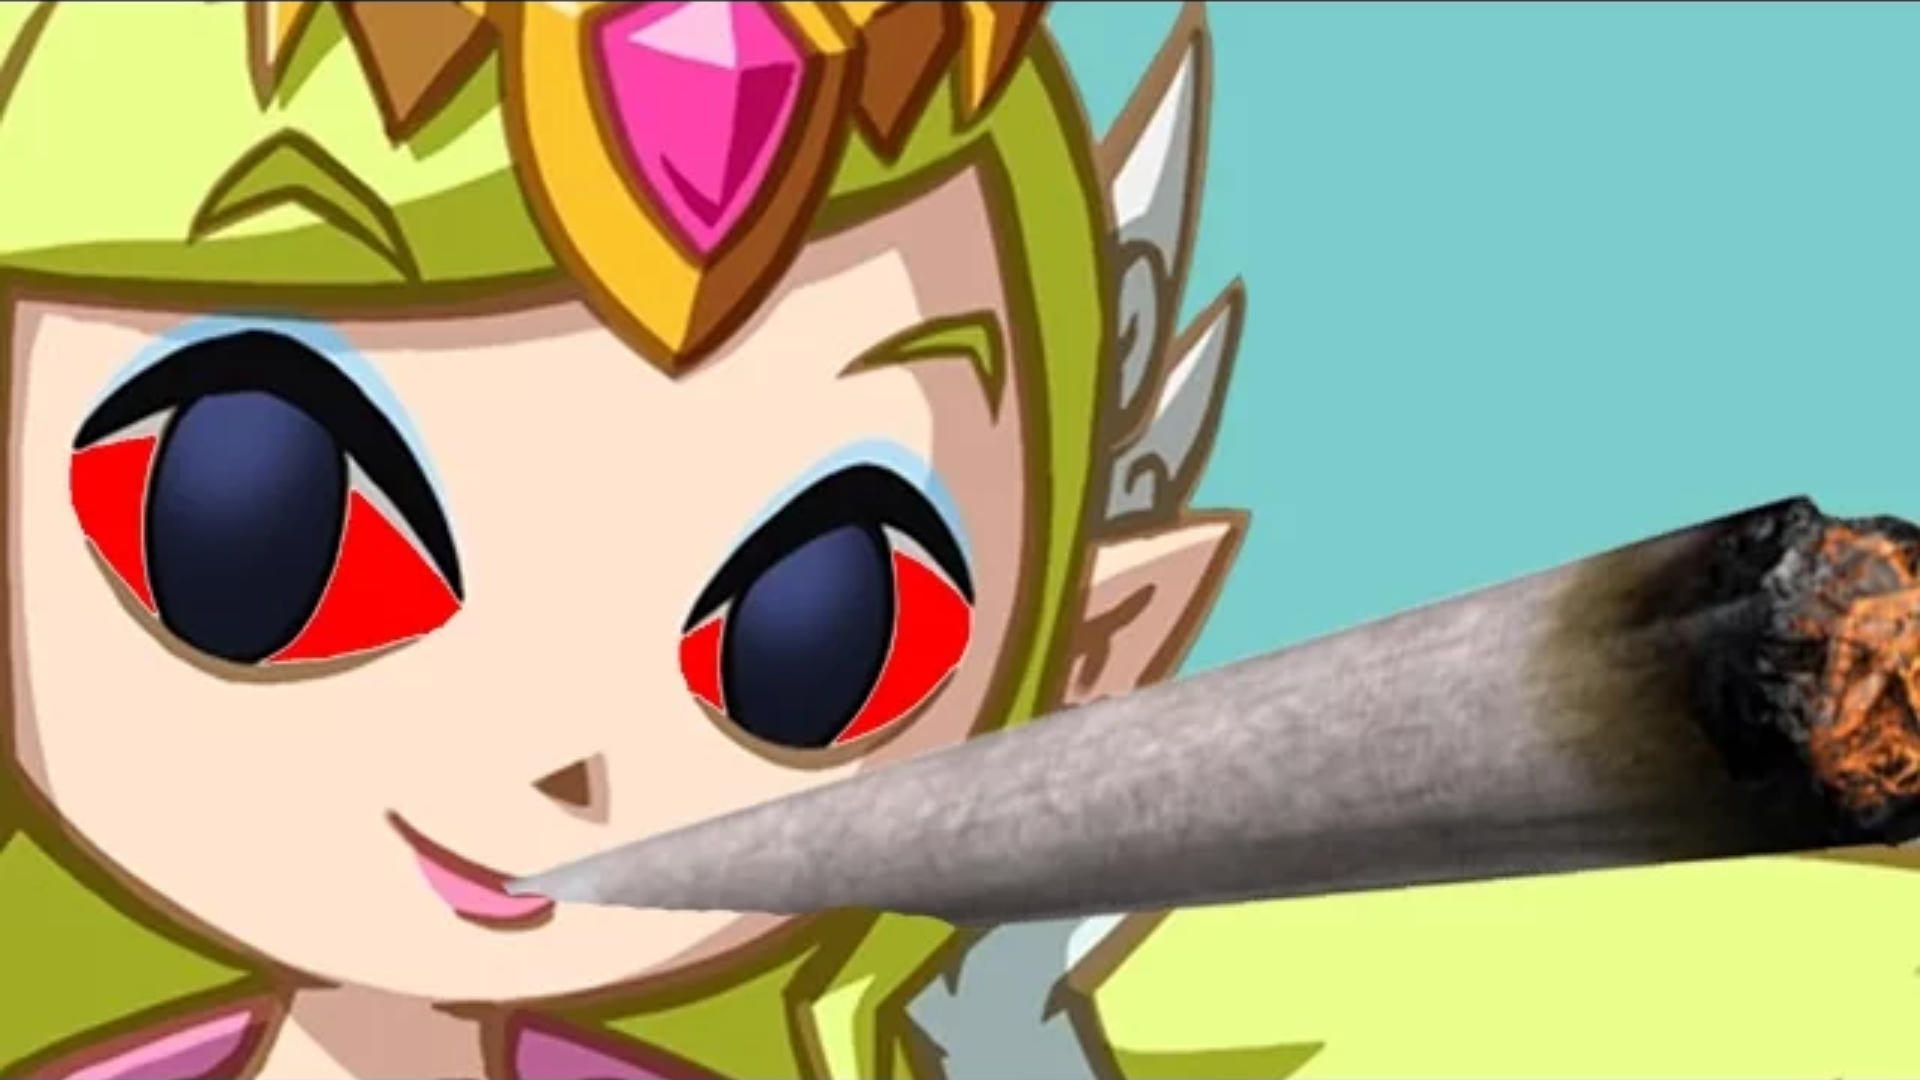 Zelda is Stoned! Blank Meme Template